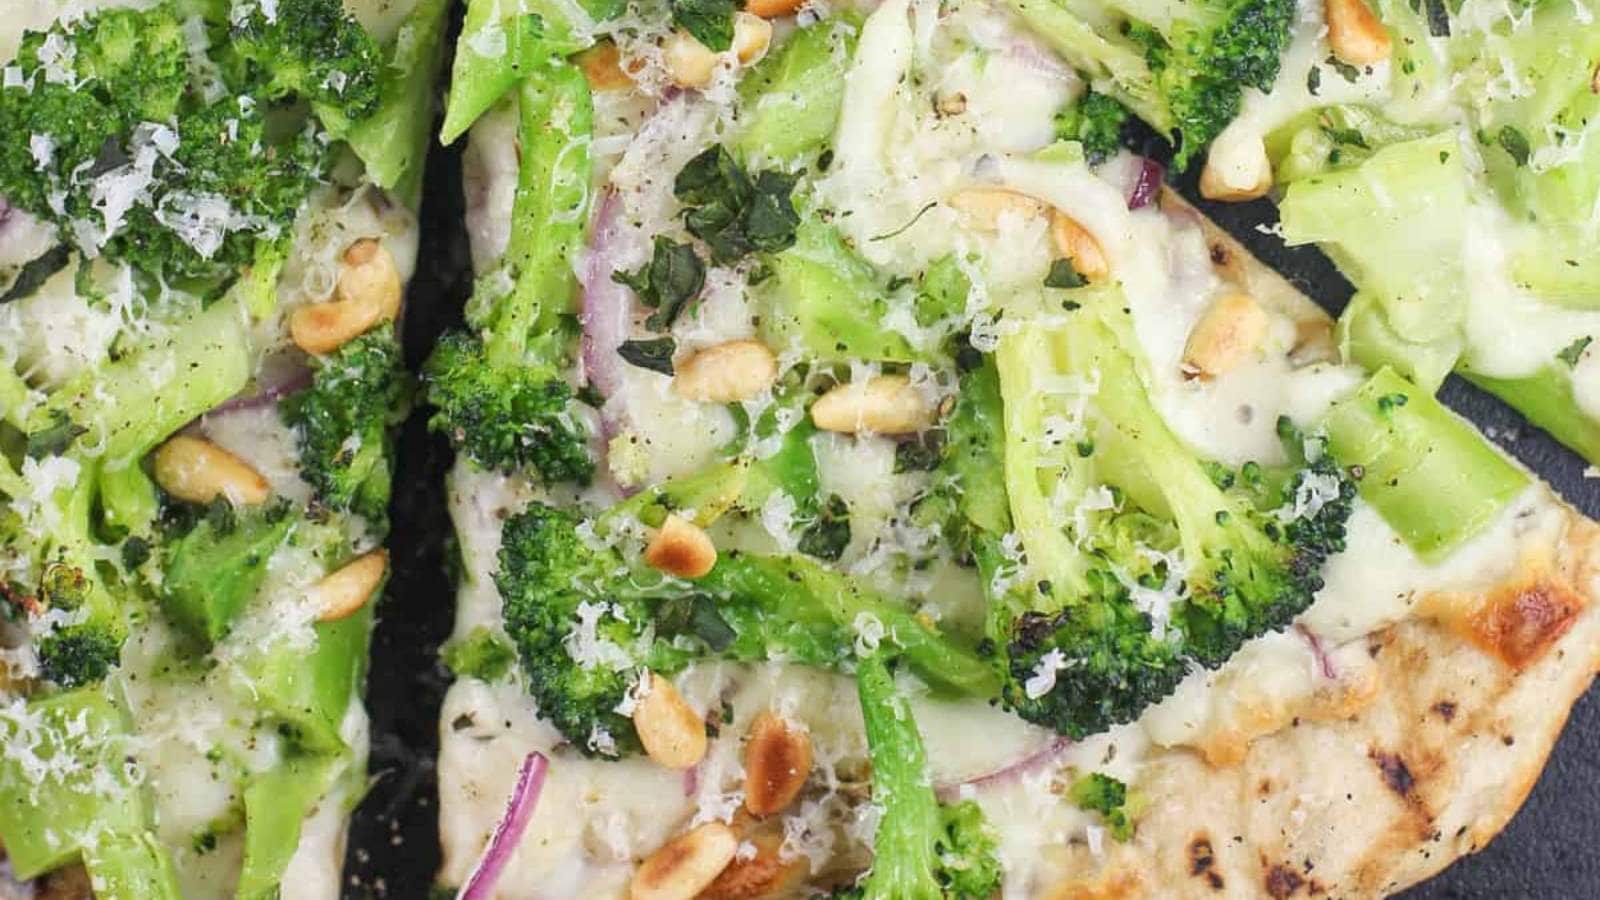 Broccoli White Pizza recipe by Ericas Recipes.